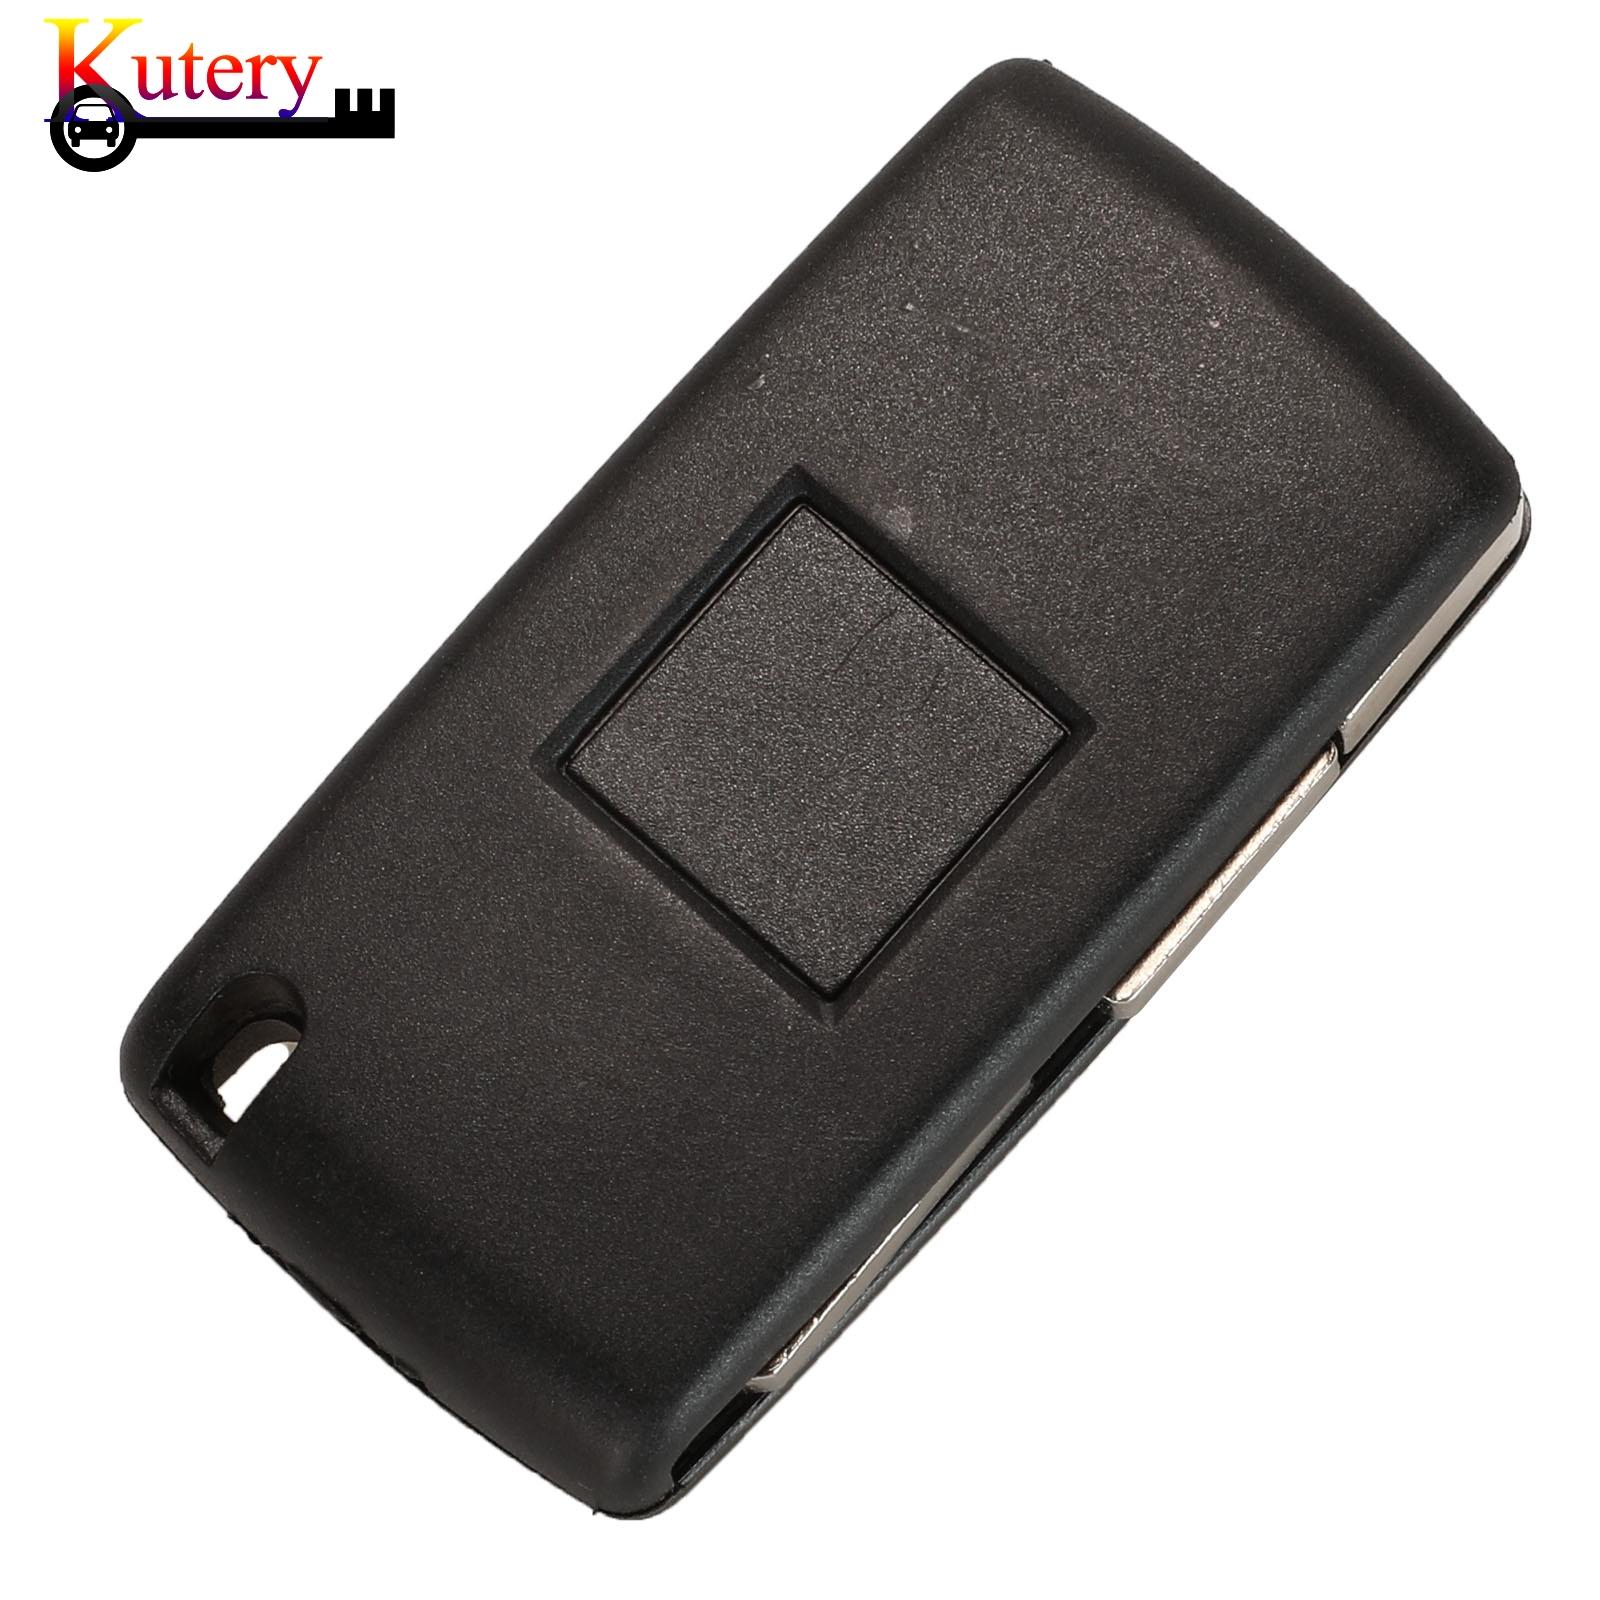 Изображение товара: Чехол для автомобильного ключа Kutery 10 шт./лот для Peugeot 406 607, 3 кнопки, Сменный Чехол для ключа CE0536 с зажимом для батареи, лезвие NE78